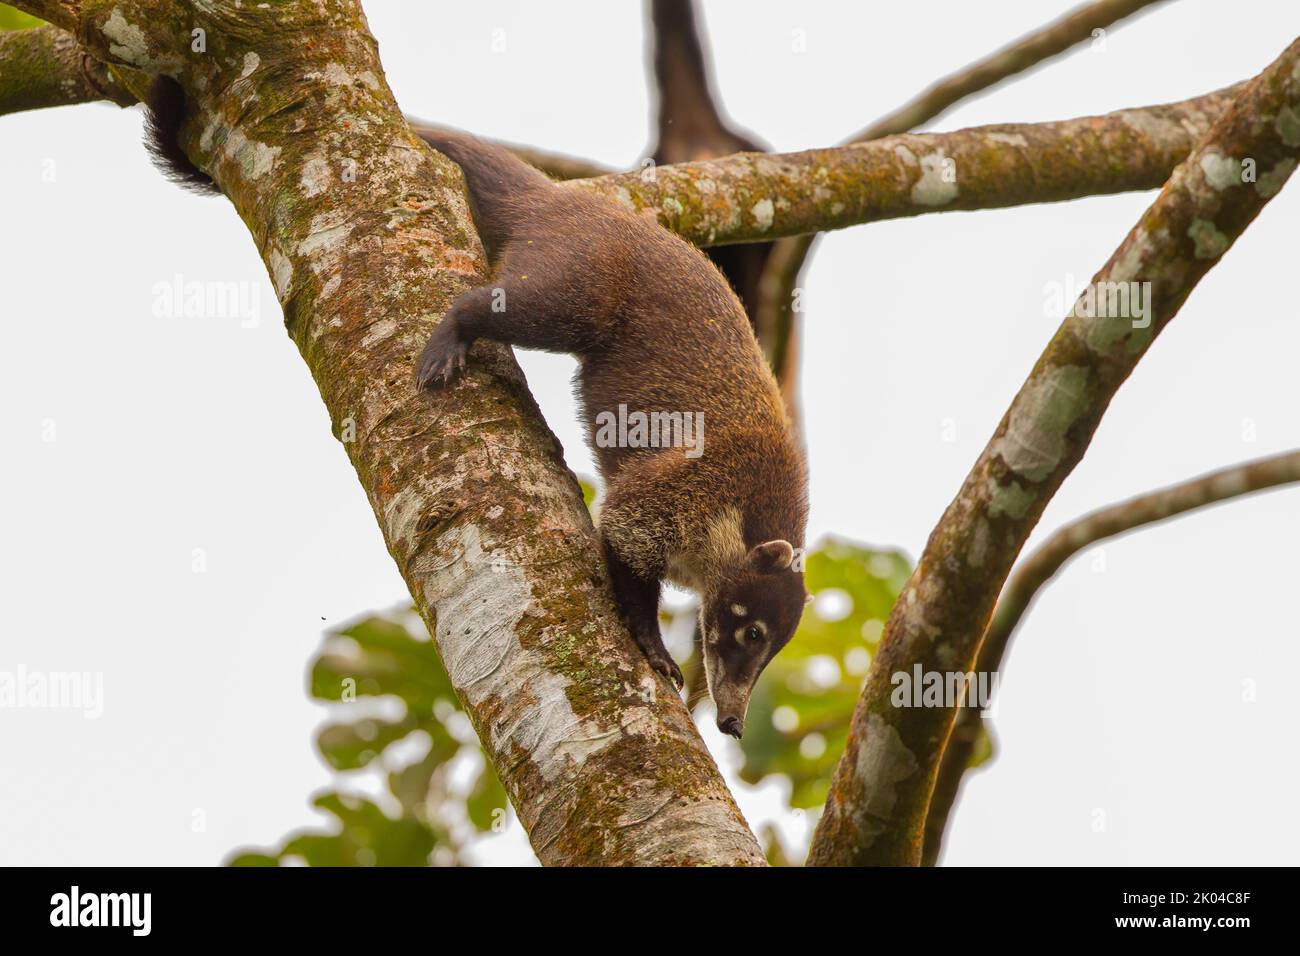 Central American Coati (Nasua narica), also known as coatimundi, foraging in tree Stock Photo